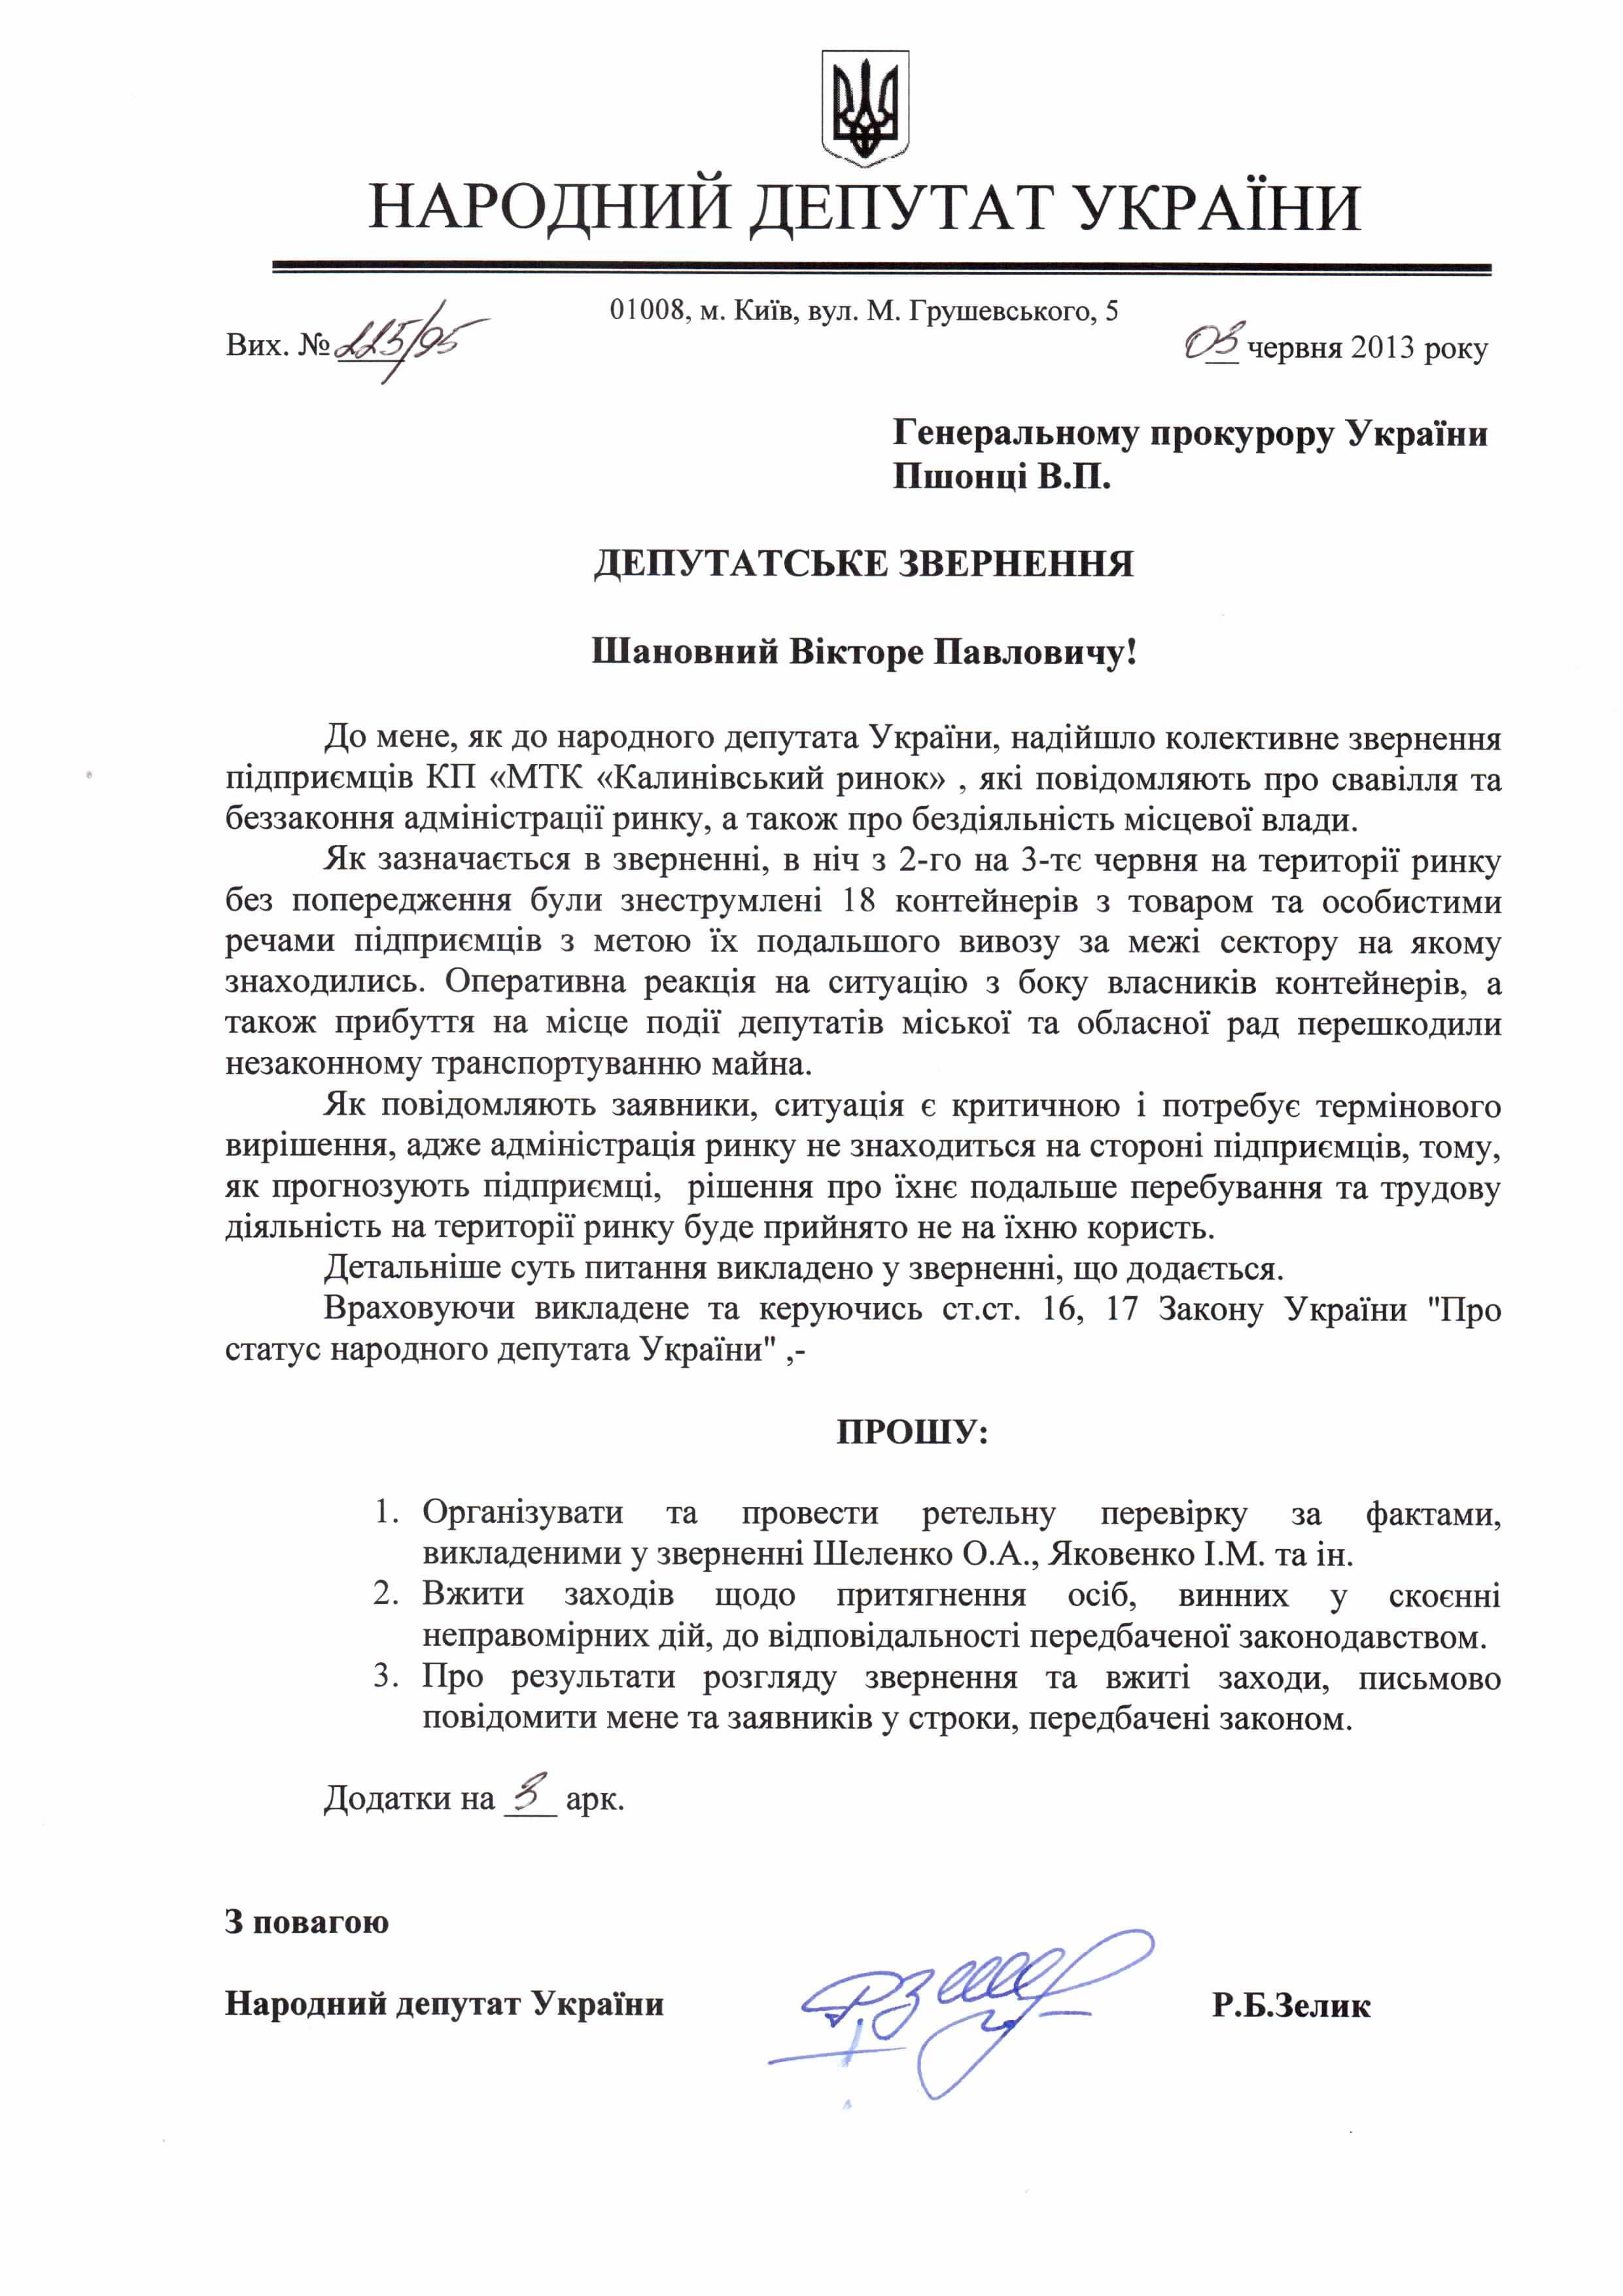 Народний депутат України  звернувся до Генпрокурора з приводу ситуації на Калинівському ринку